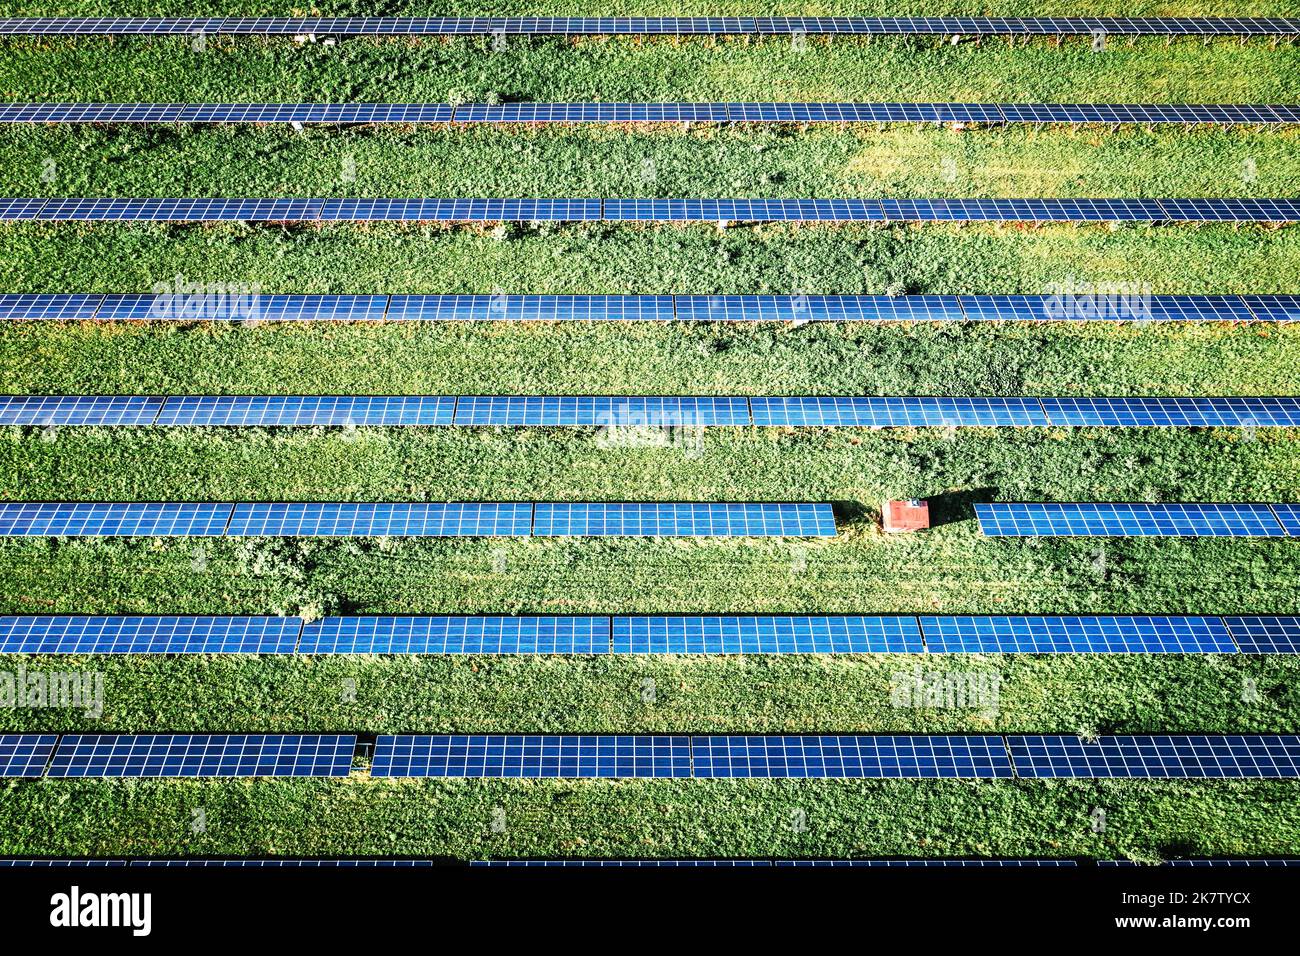 Panneau solaire de dessus. Photo de drone aérienne regardant vers le bas sur des rangées de panneaux solaires bleus dans une ferme d'énergie renouvelable Banque D'Images